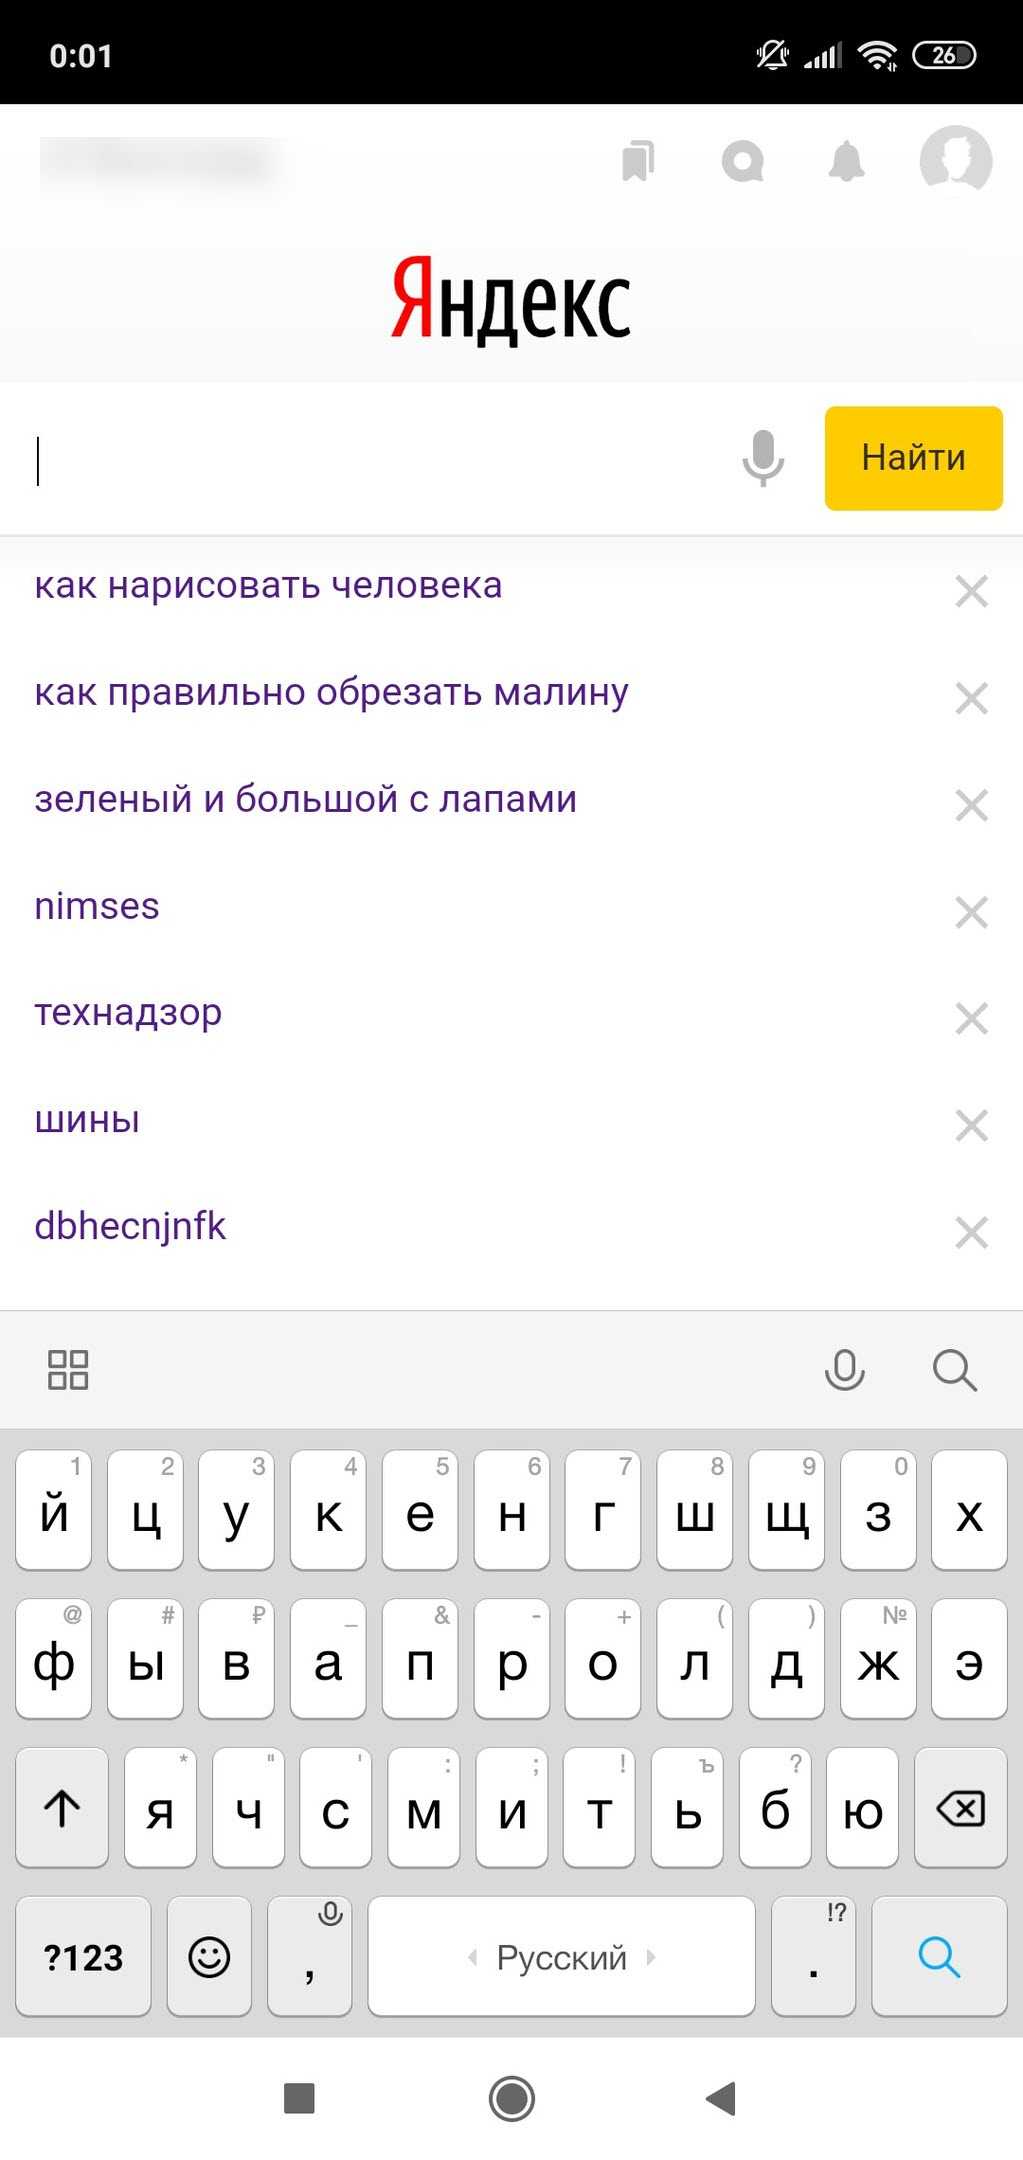 Удаление телефона на яндексе. Удалить историю поиска в Яндексе на телефоне. Как очистить историю запросов в Яндексе на телефоне. Очистка истории в Яндексе на телефоне. Как удалить запросы в Яндексе на смартфоне.